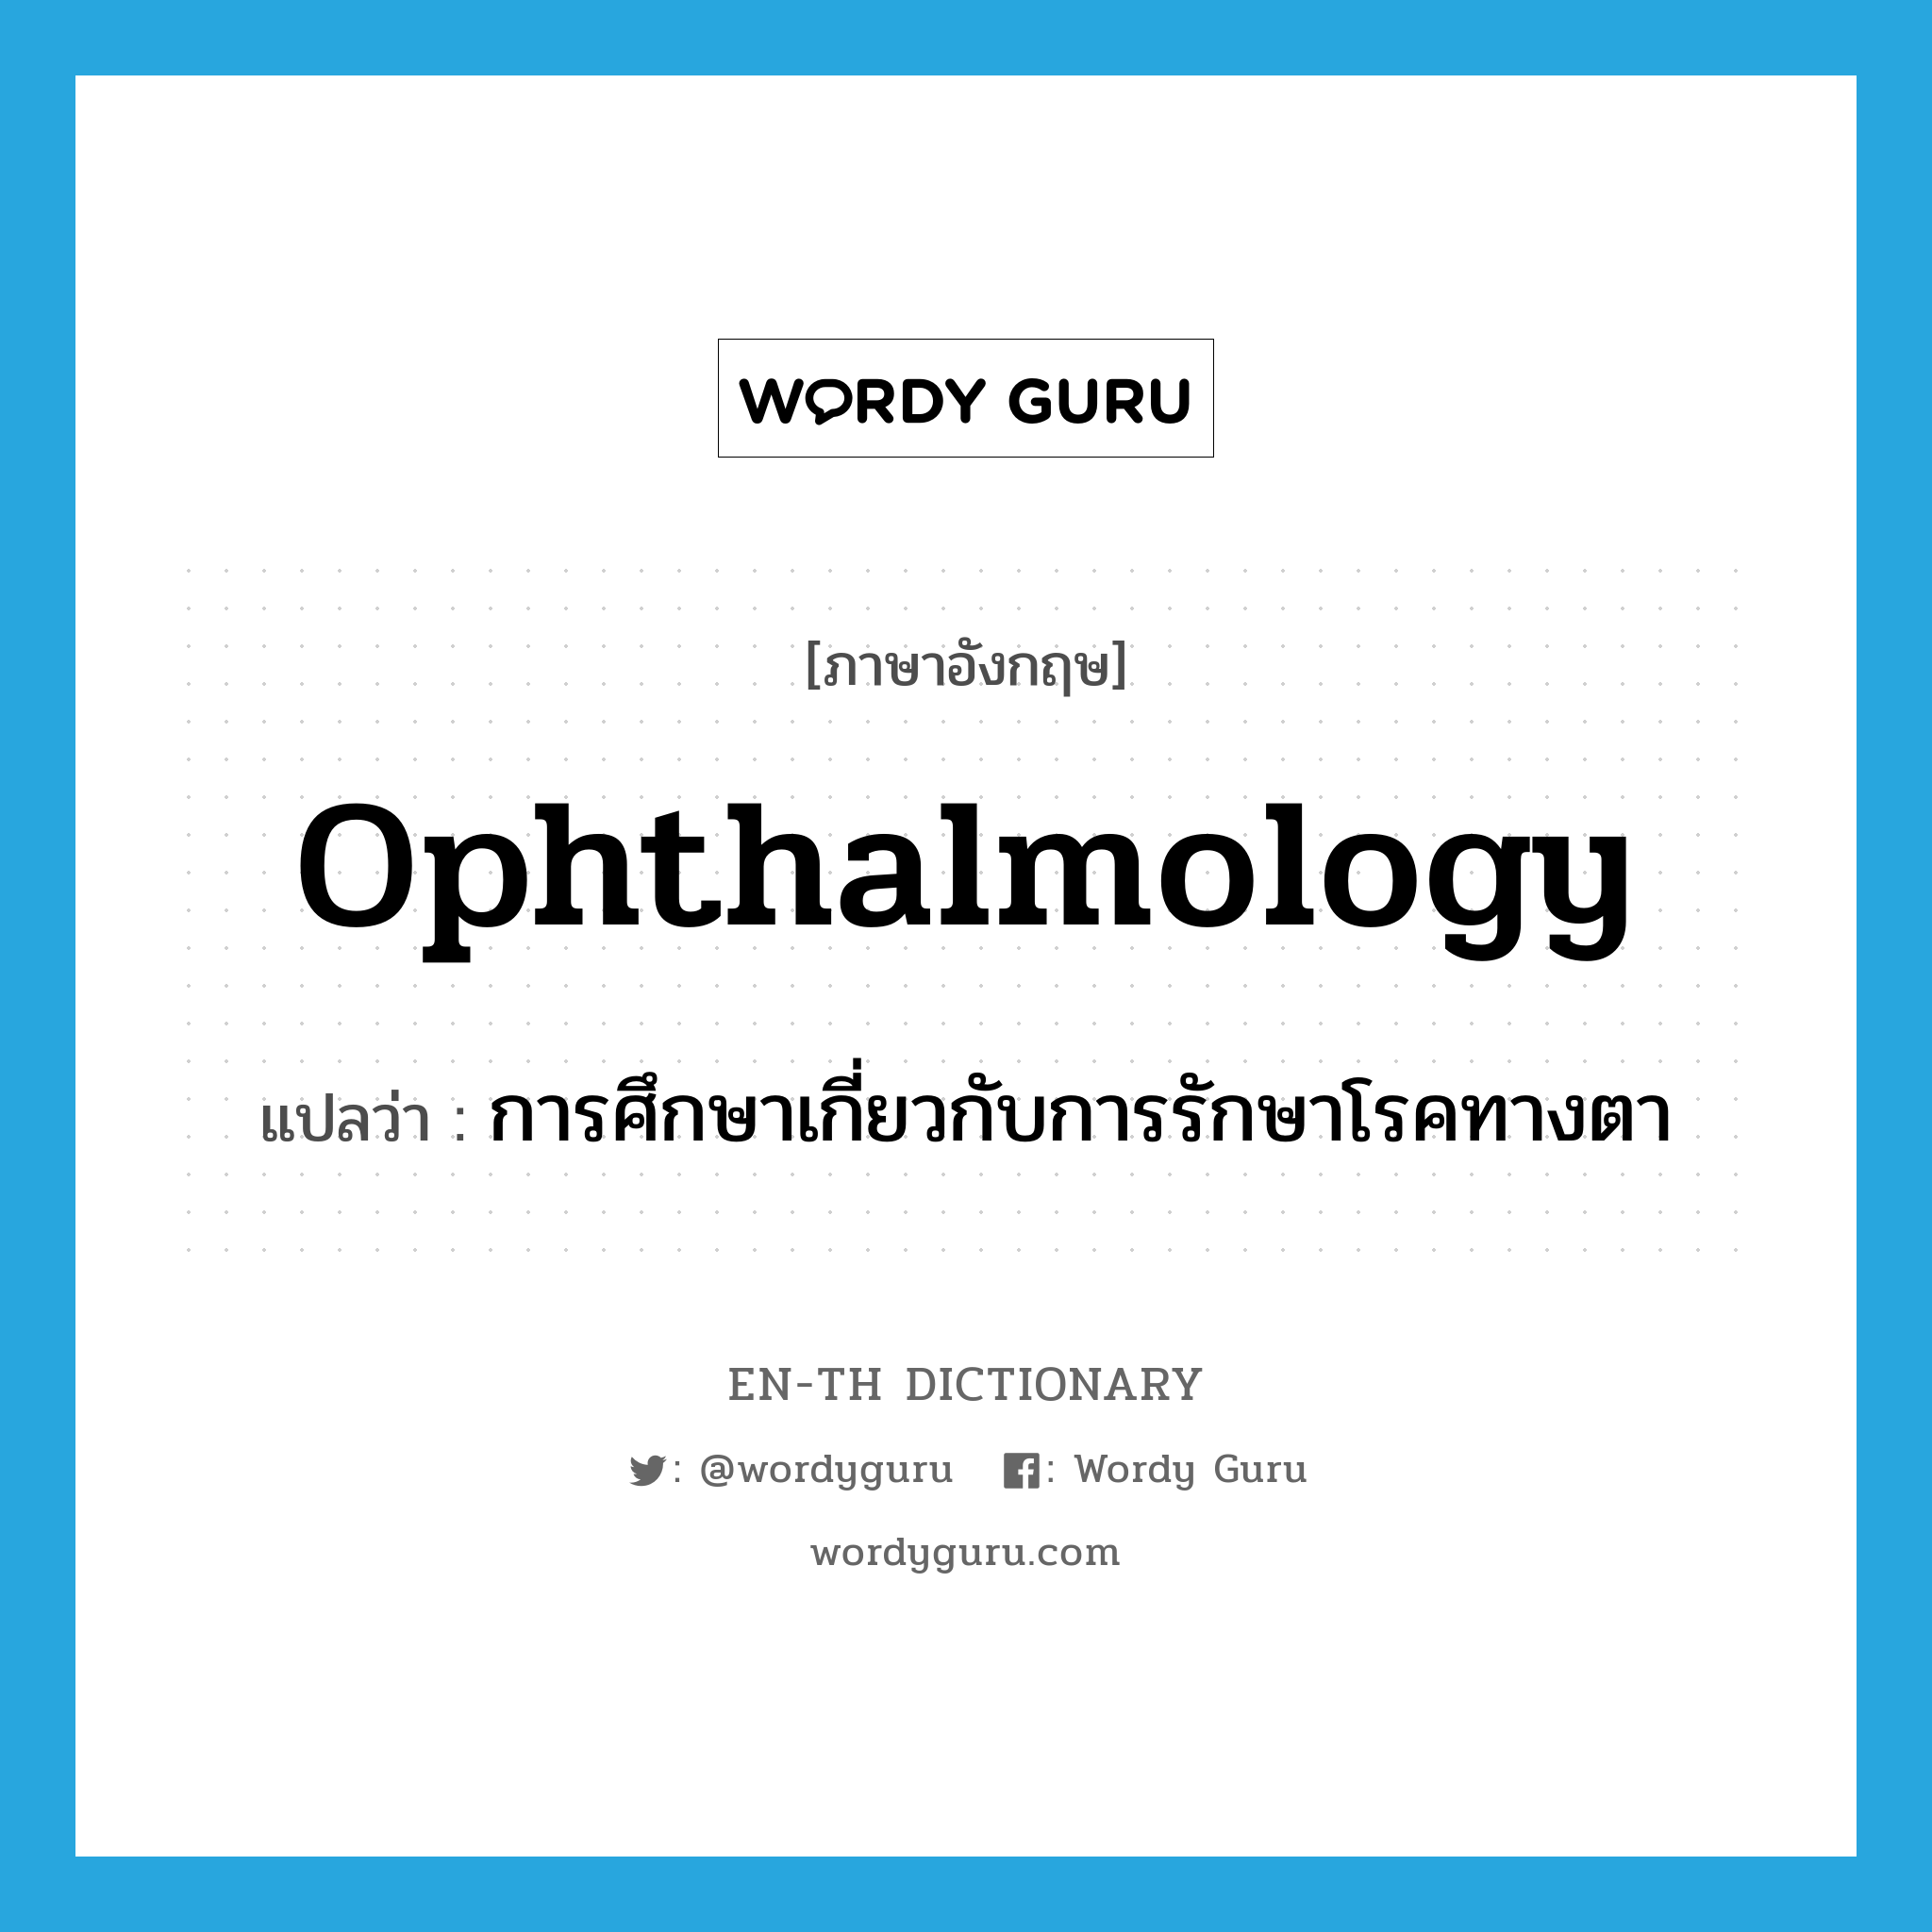 การศึกษาเกี่ยวกับการรักษาโรคทางตา ภาษาอังกฤษ?, คำศัพท์ภาษาอังกฤษ การศึกษาเกี่ยวกับการรักษาโรคทางตา แปลว่า ophthalmology ประเภท N หมวด N